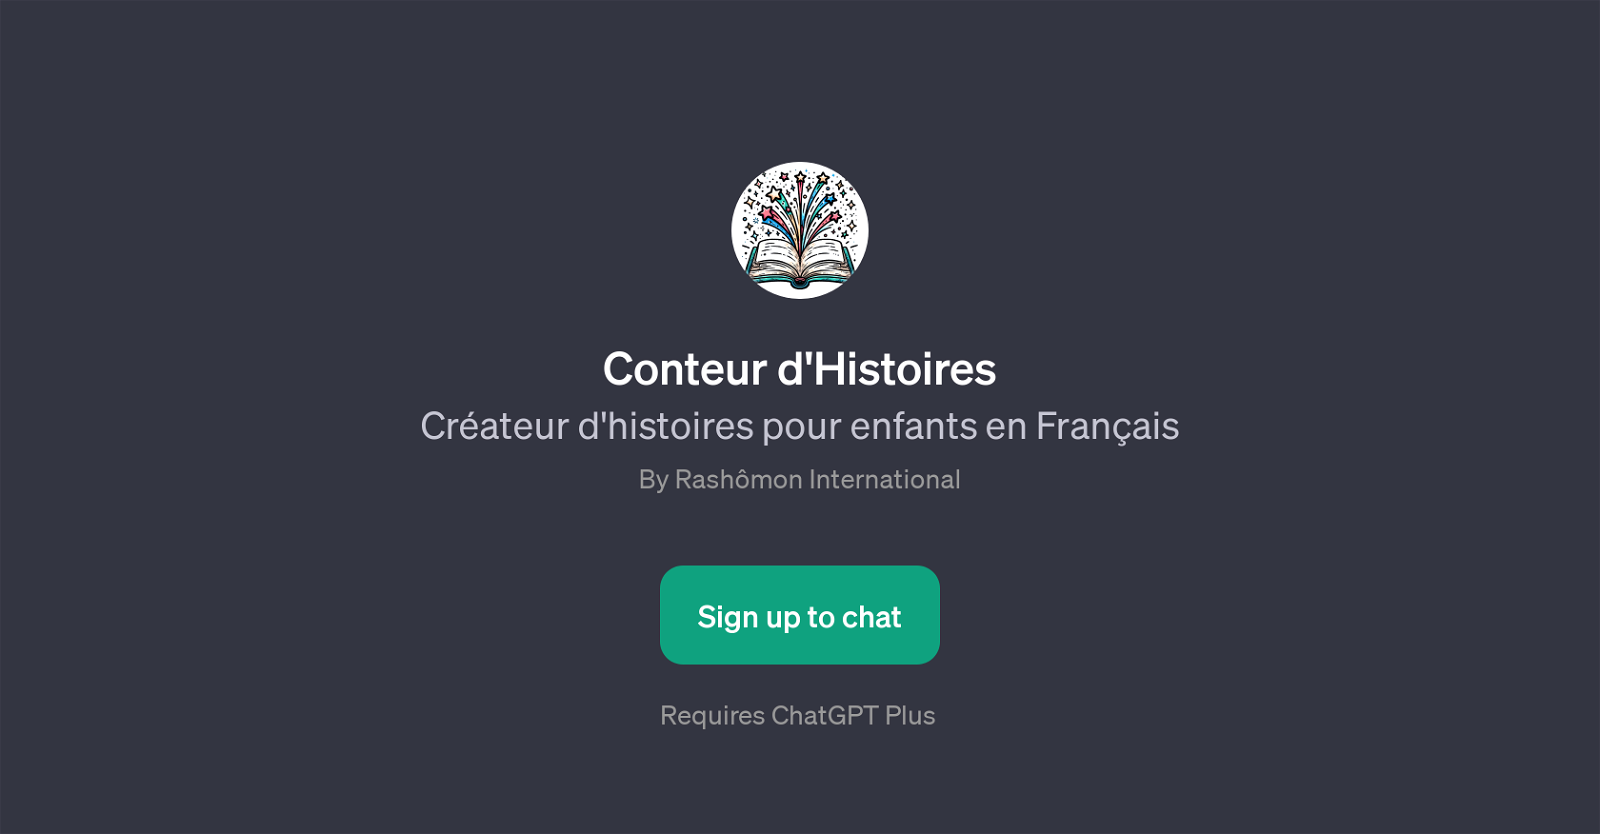 Conteur d'Histoires website